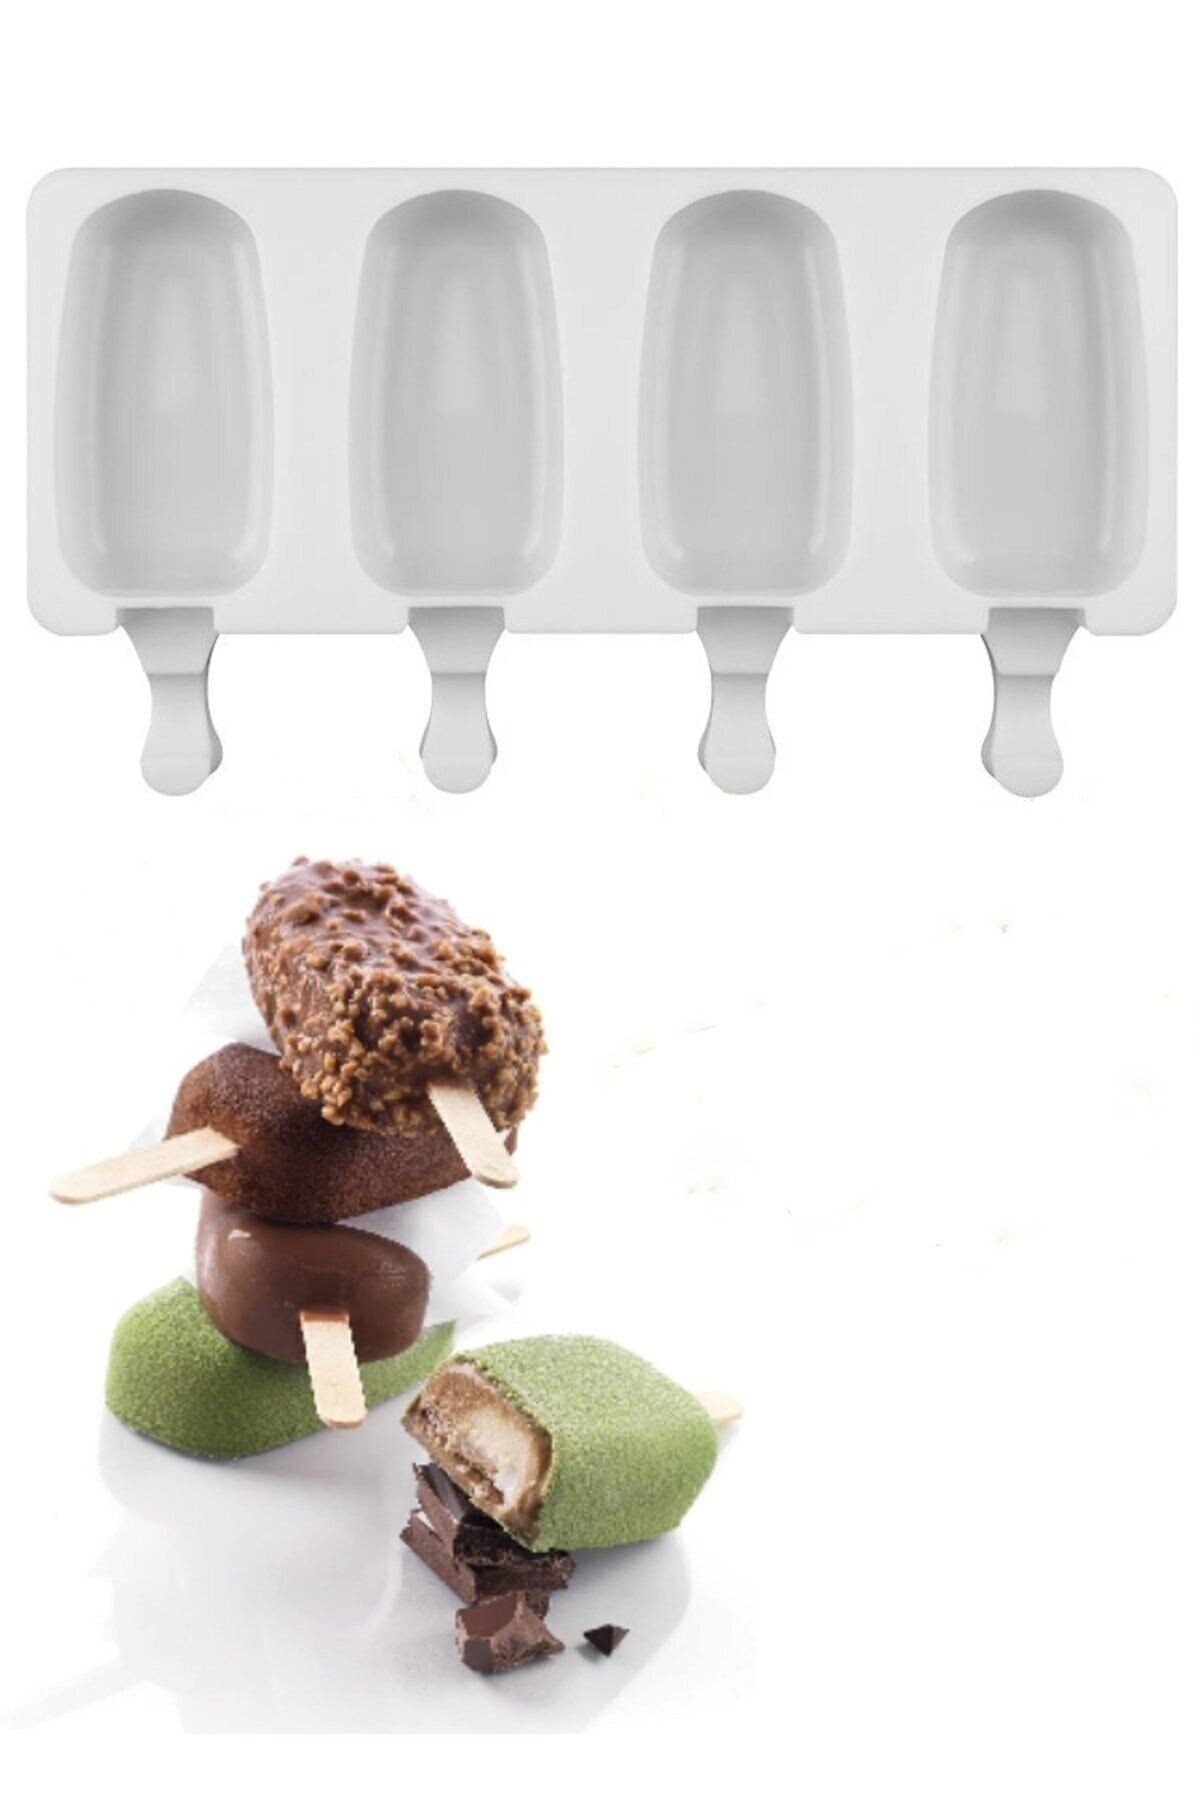 İLİVA 4' Lü Magnum Dondurma Kalıbı, Silikon Büyük Boy Beyaz Dondurma Kabı, Dondurmalık - ( Bpa Free )